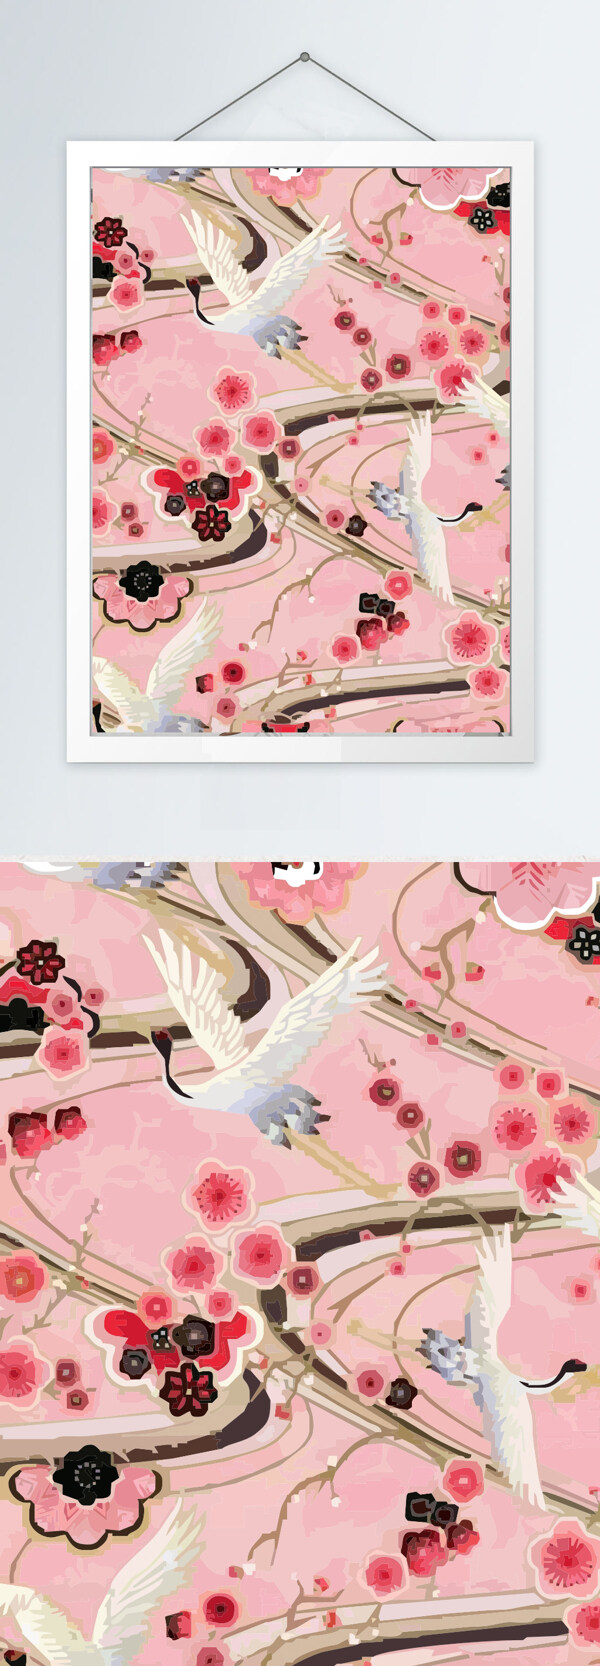 新中式花鸟彩色装饰画